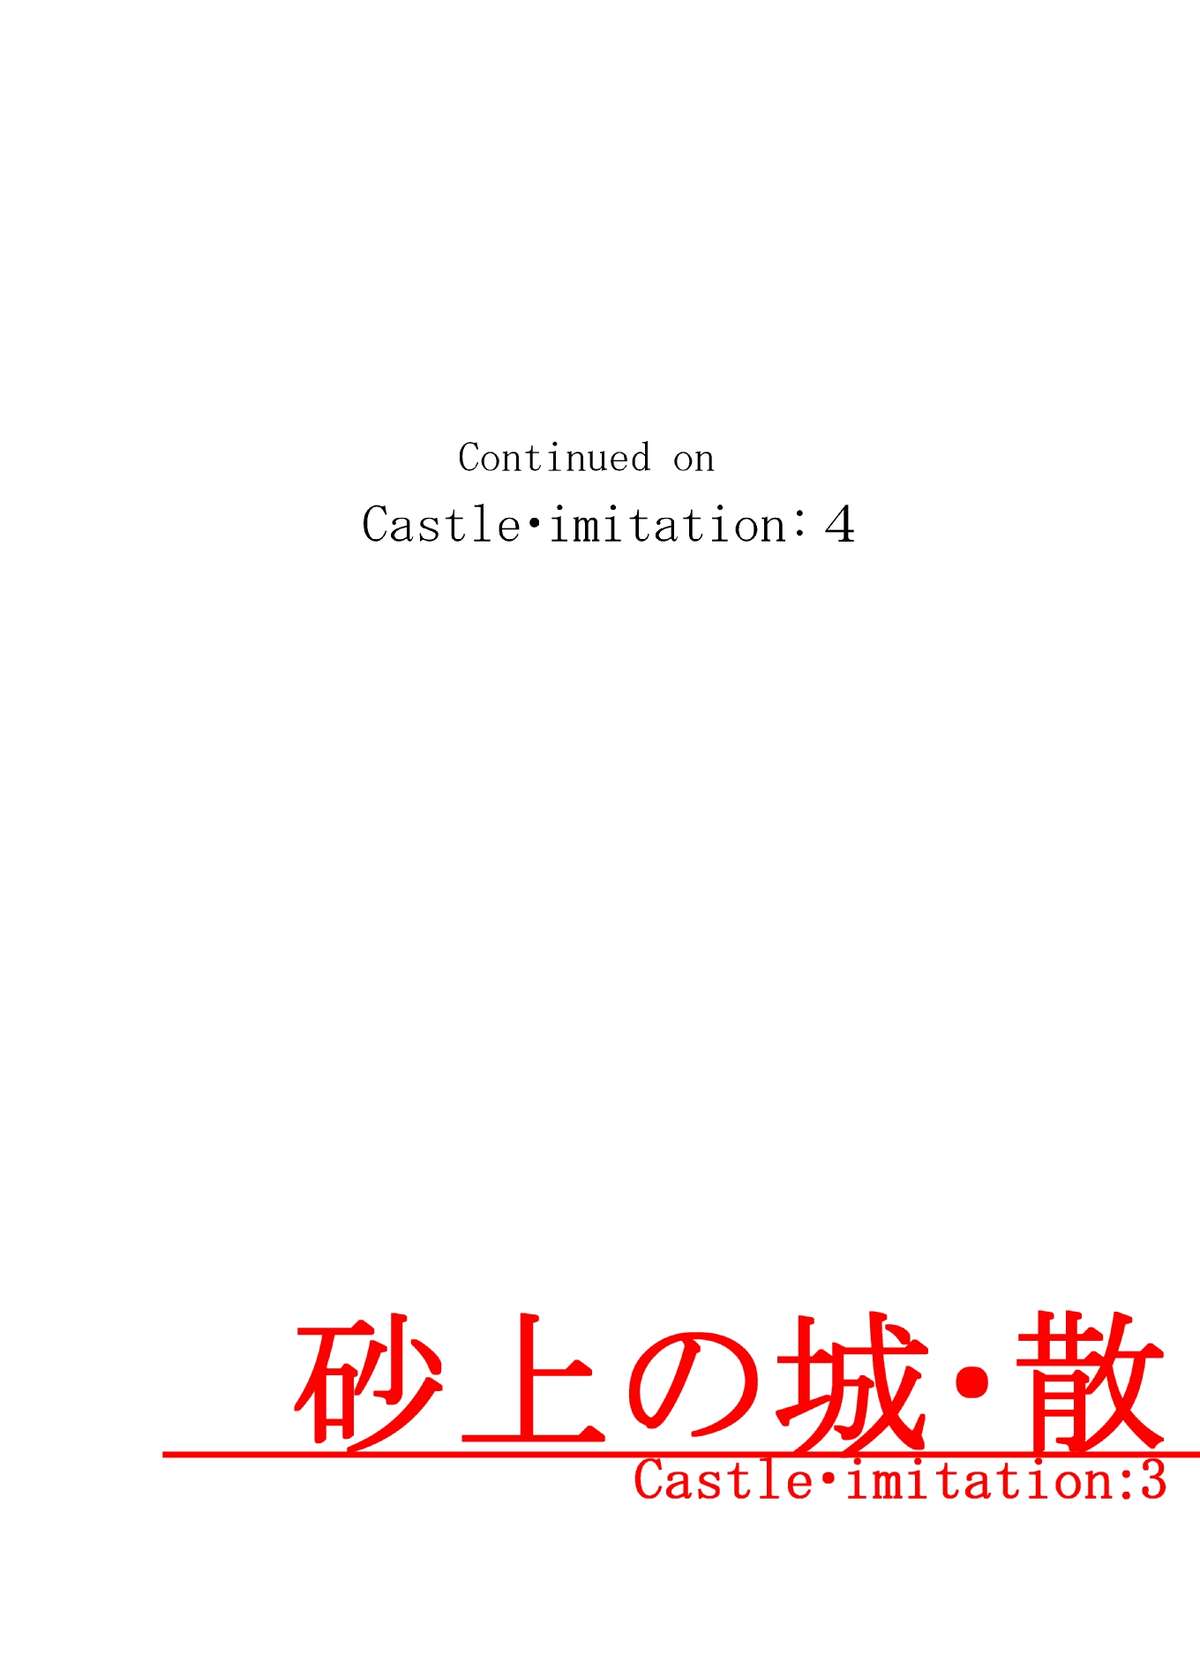 [メルカトル図法(ノス虎ダム男)] 砂上の城・似/Castle・imitation:3